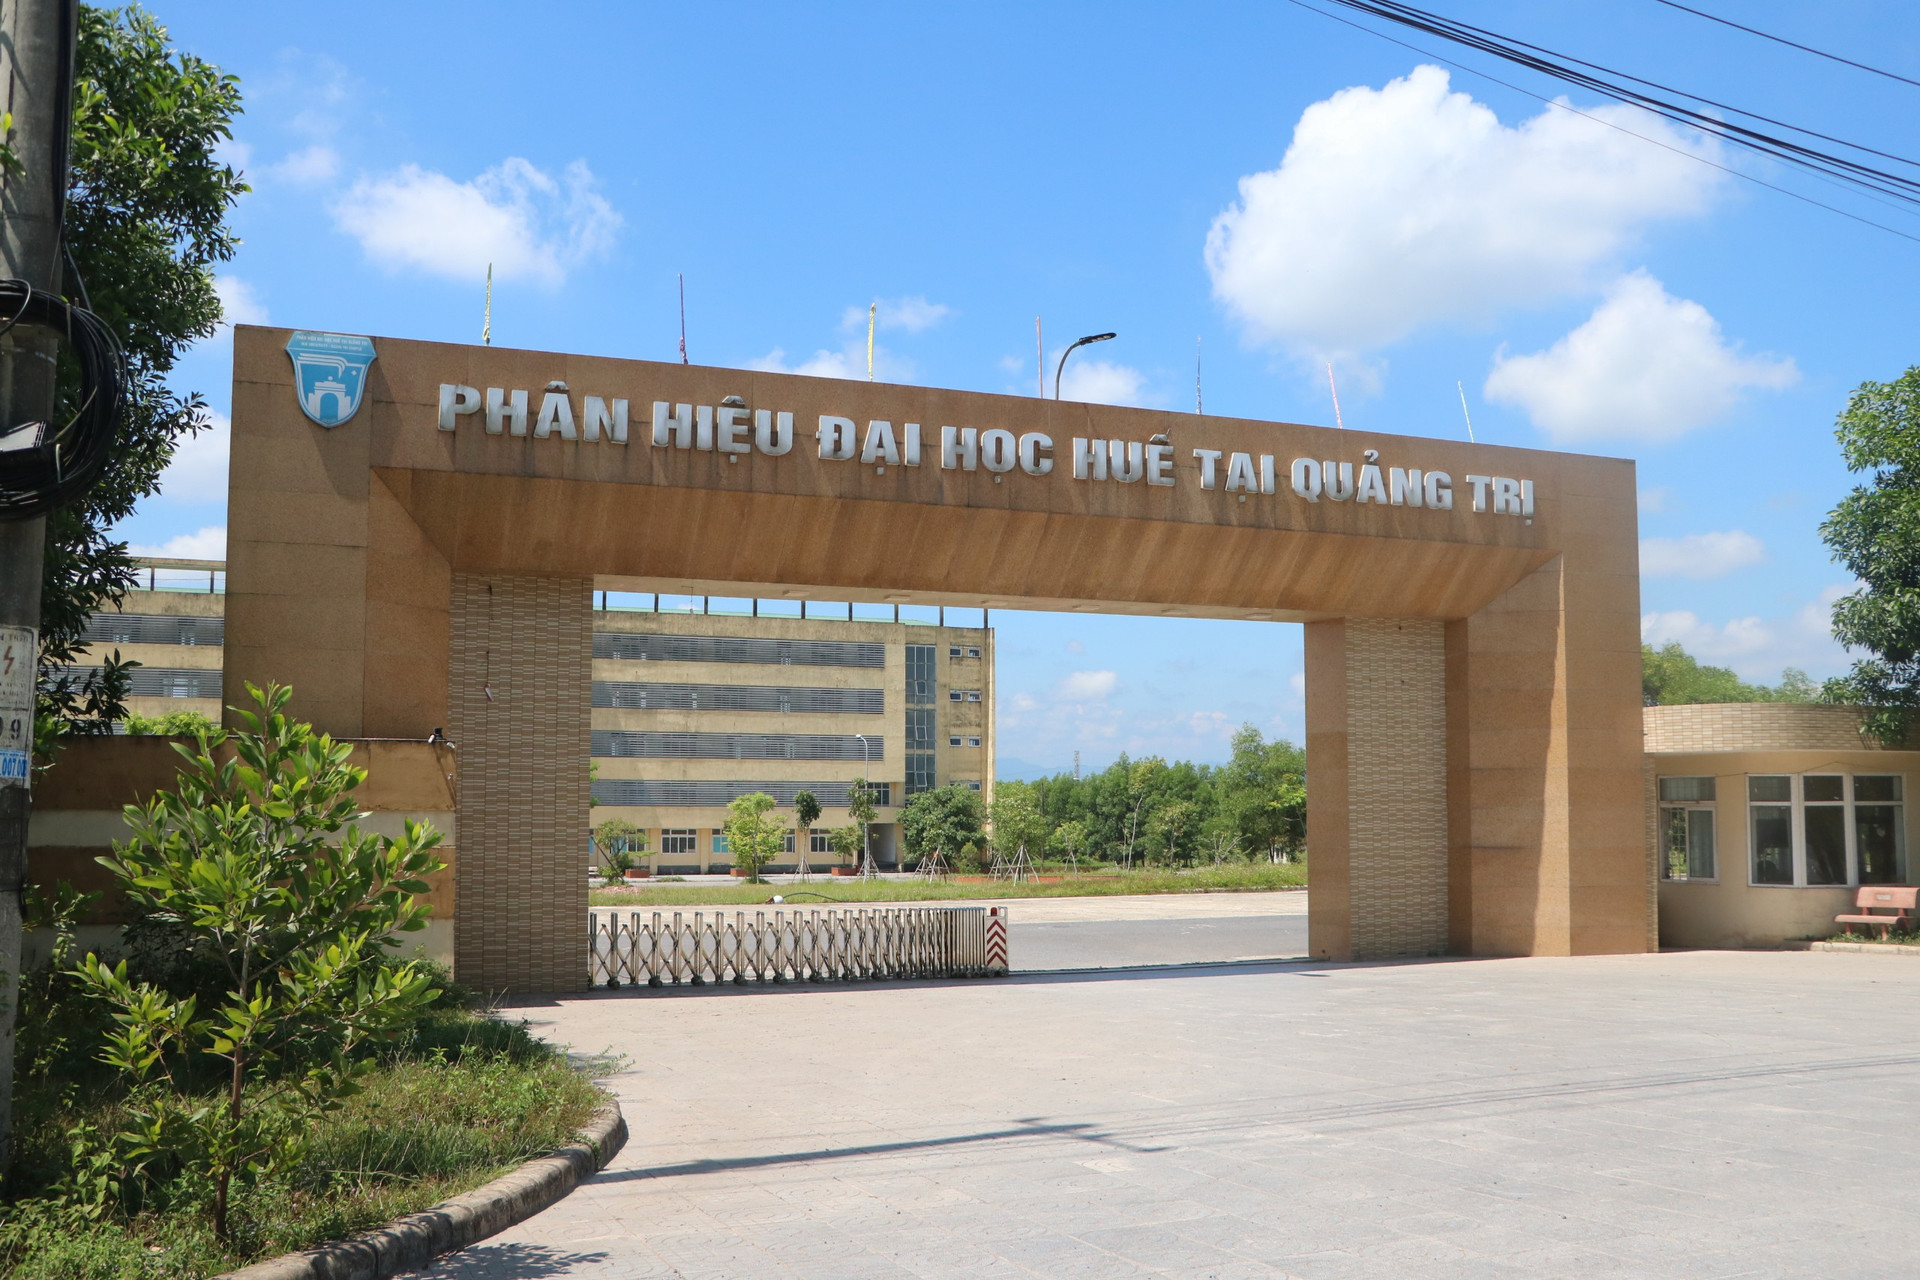 Vào năm 2003, thể theo nguyện vọng của Đảng bộ và Nhân dân tỉnh Quảng Trị, UBND tỉnh Quảng Trị đã thảo luận thống nhất với Đại học Huế về việc xây dựng và phát triển giáo dục đại học trên địa bàn tỉnh.